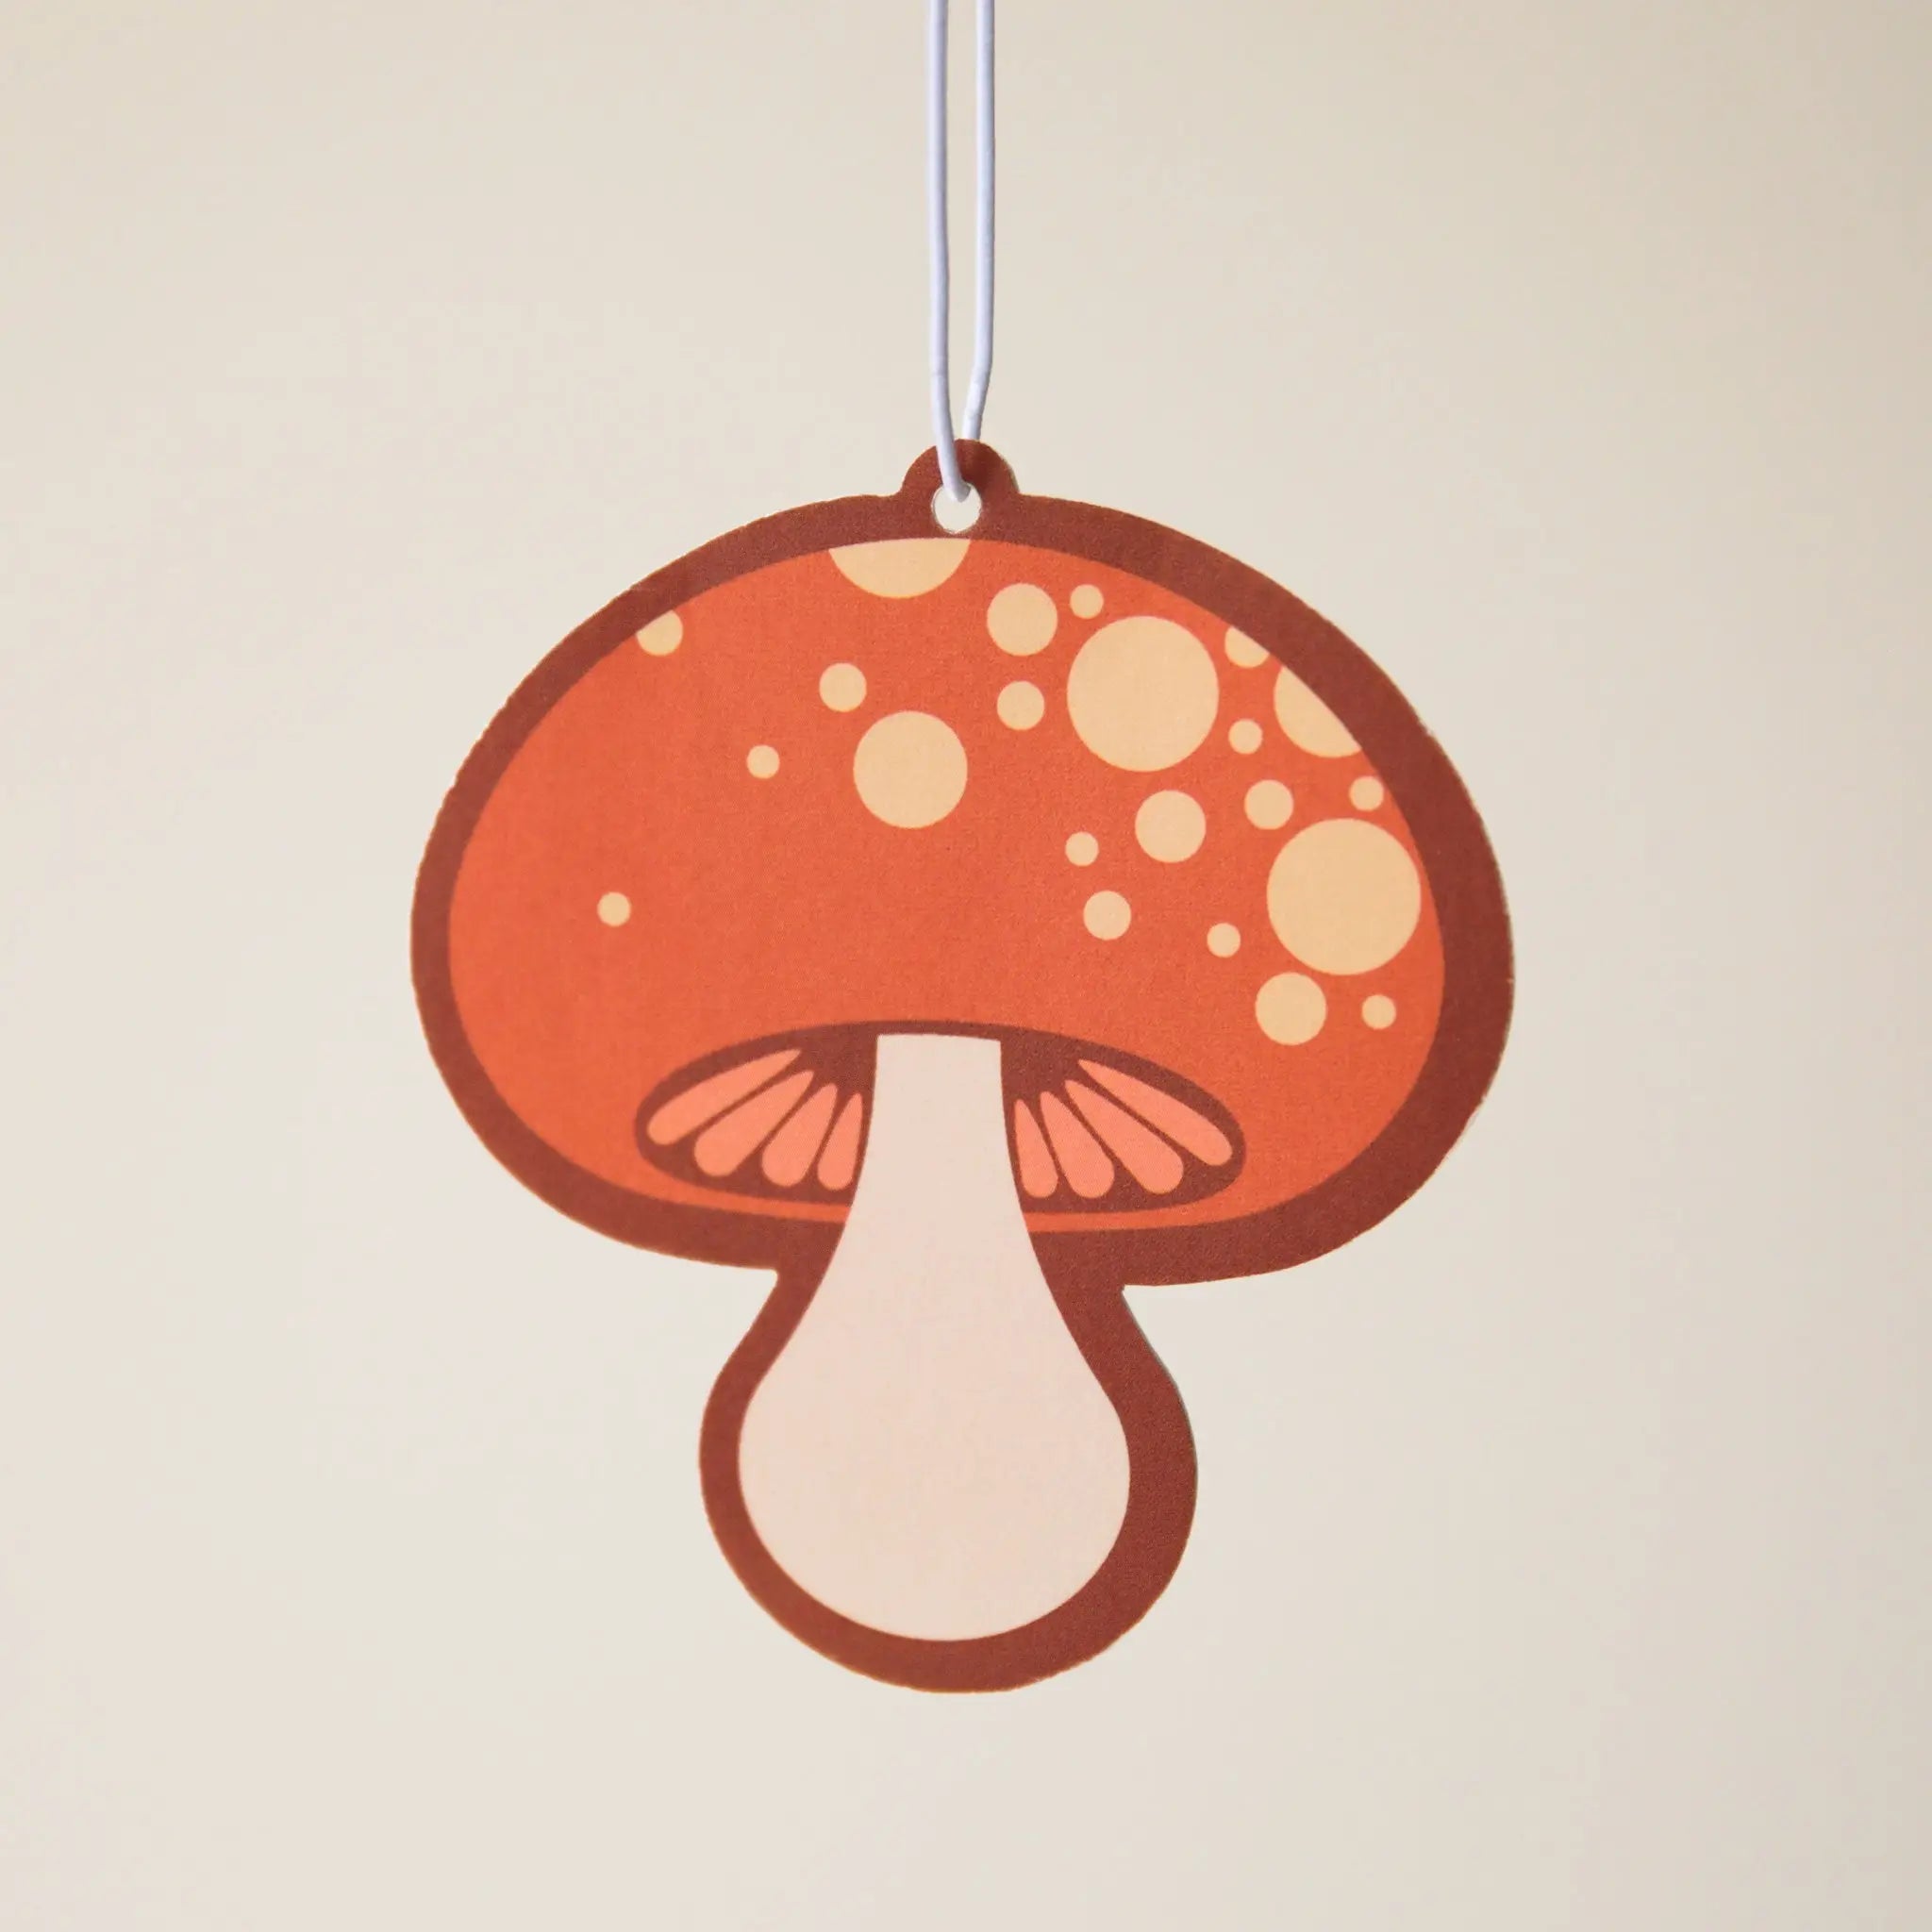 mushroom air freshener by Sunshine Studios